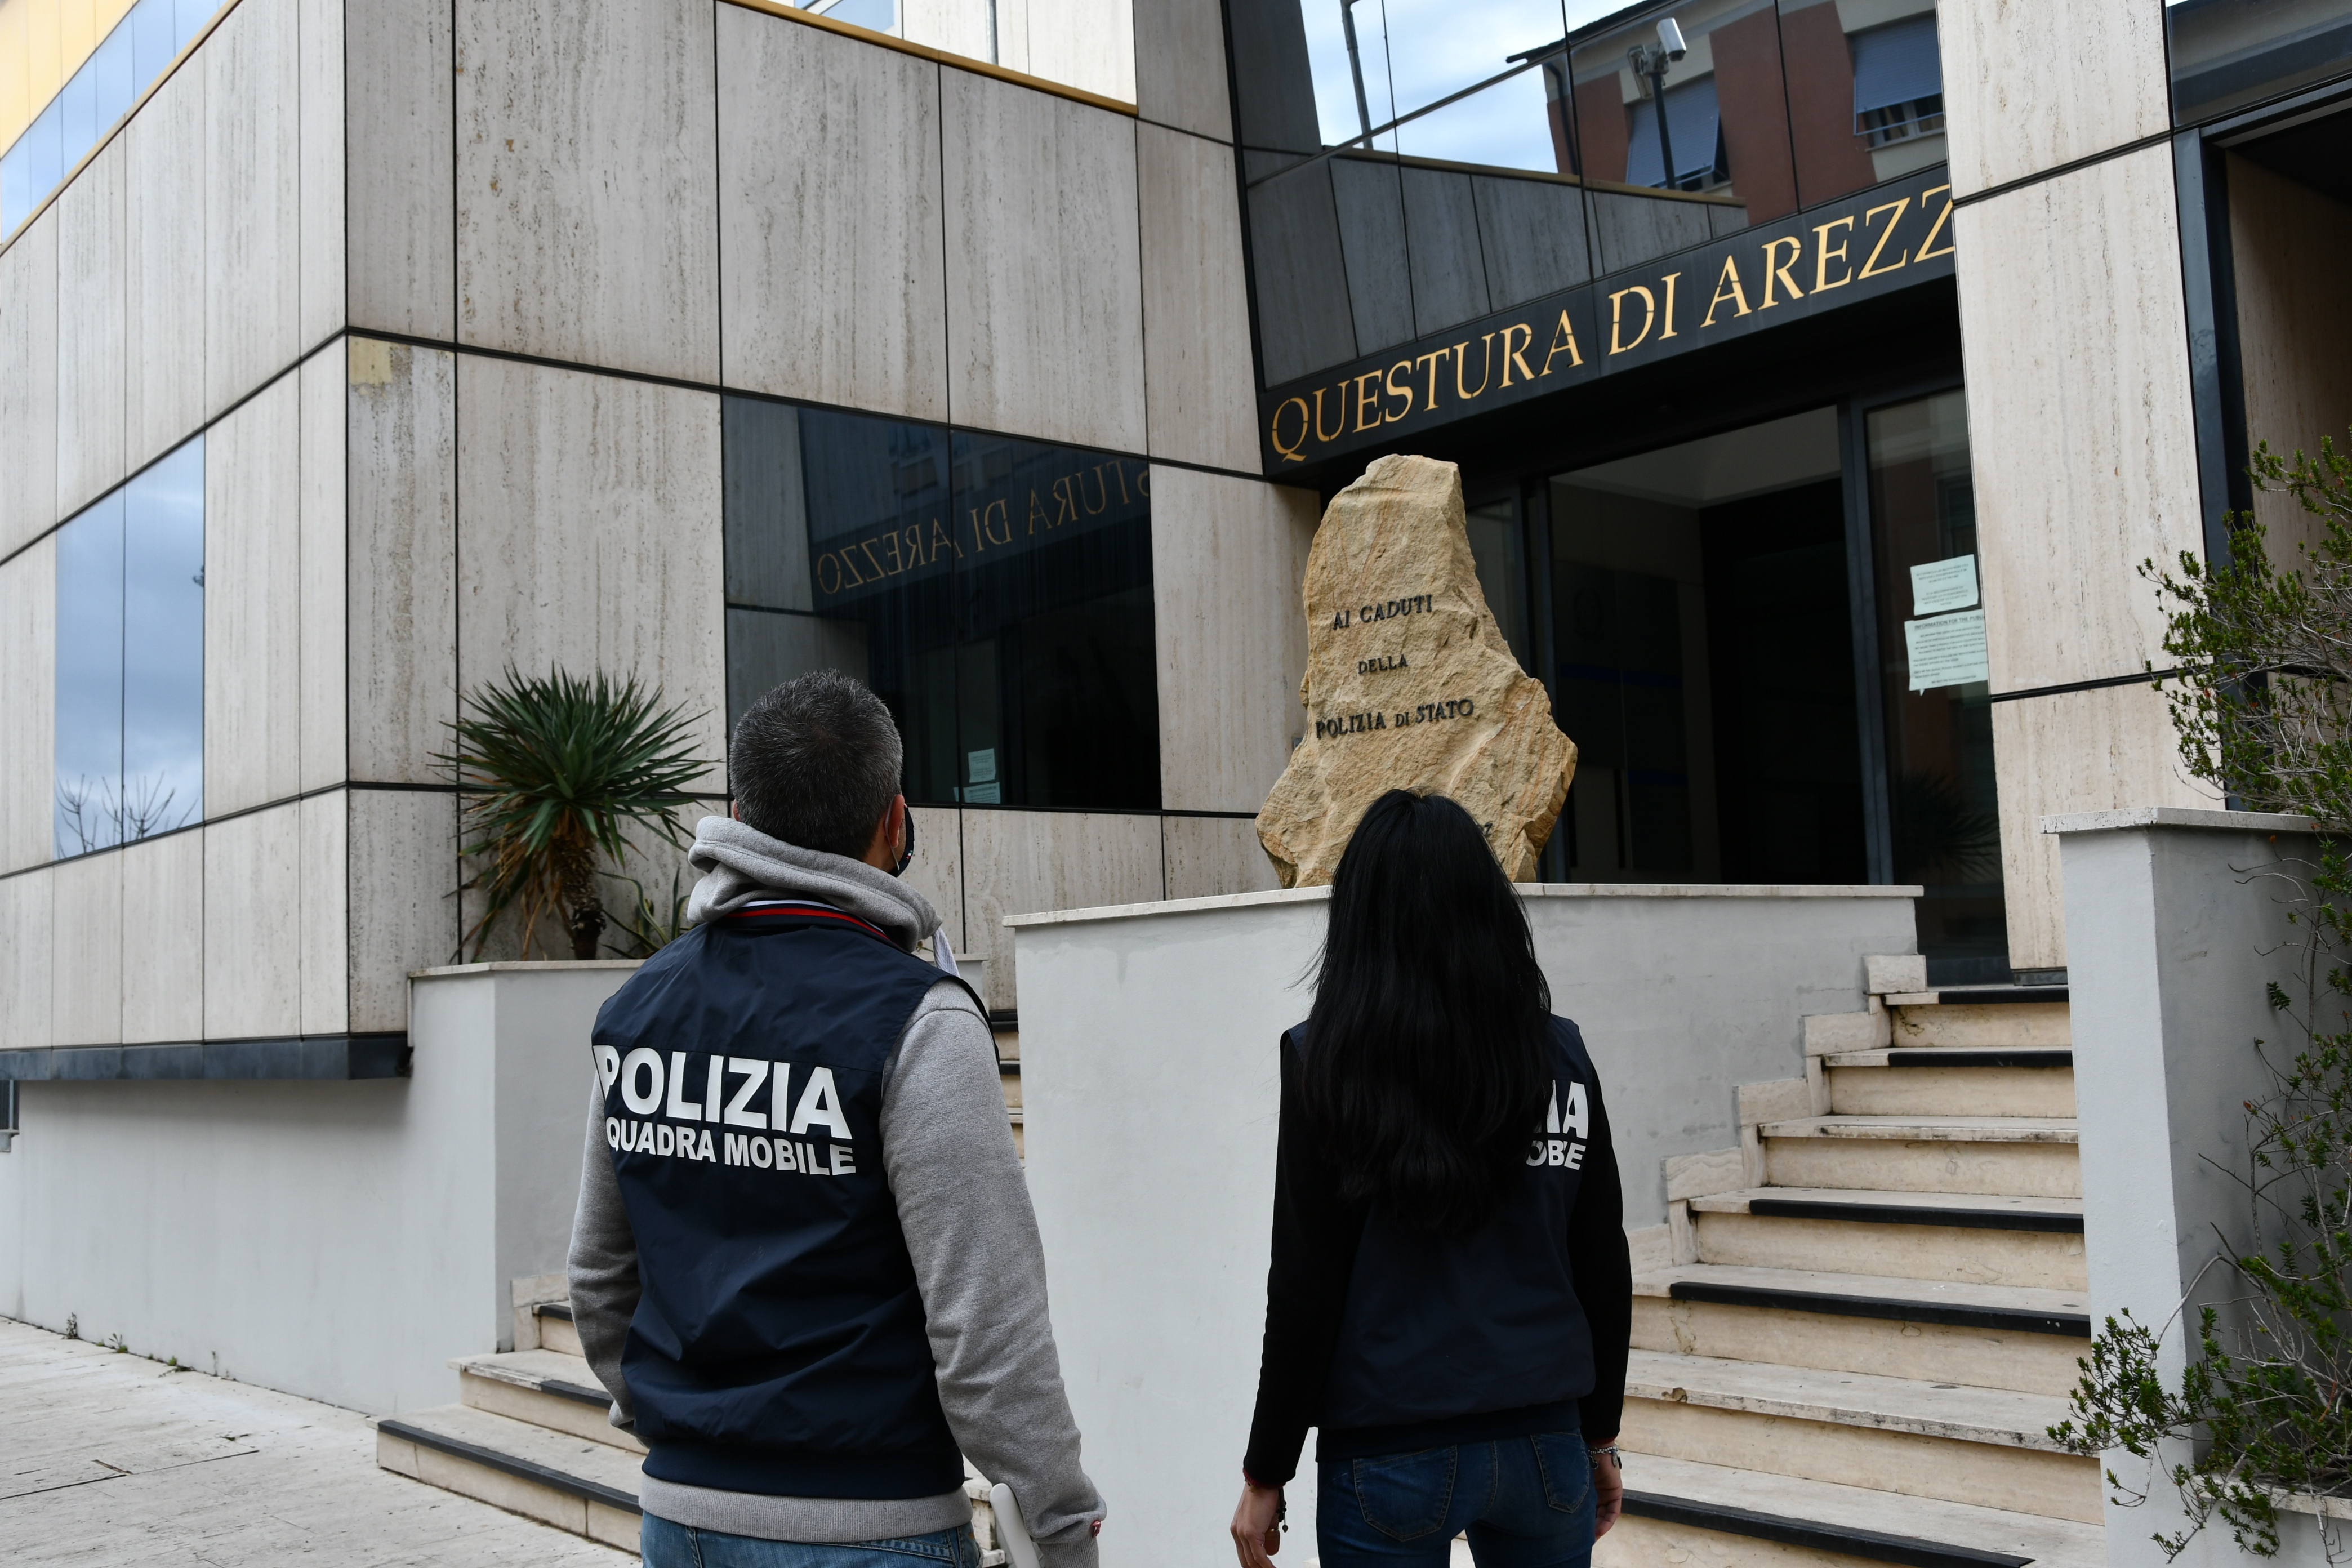 VIOLENZA SULLE DONNE: la Polizia di Stato arresta cittadino albanese clandestino autore di aggressioni fisiche contro la ex compagna e verso gli stessi agenti che sono intervenuti in suo aiuto.